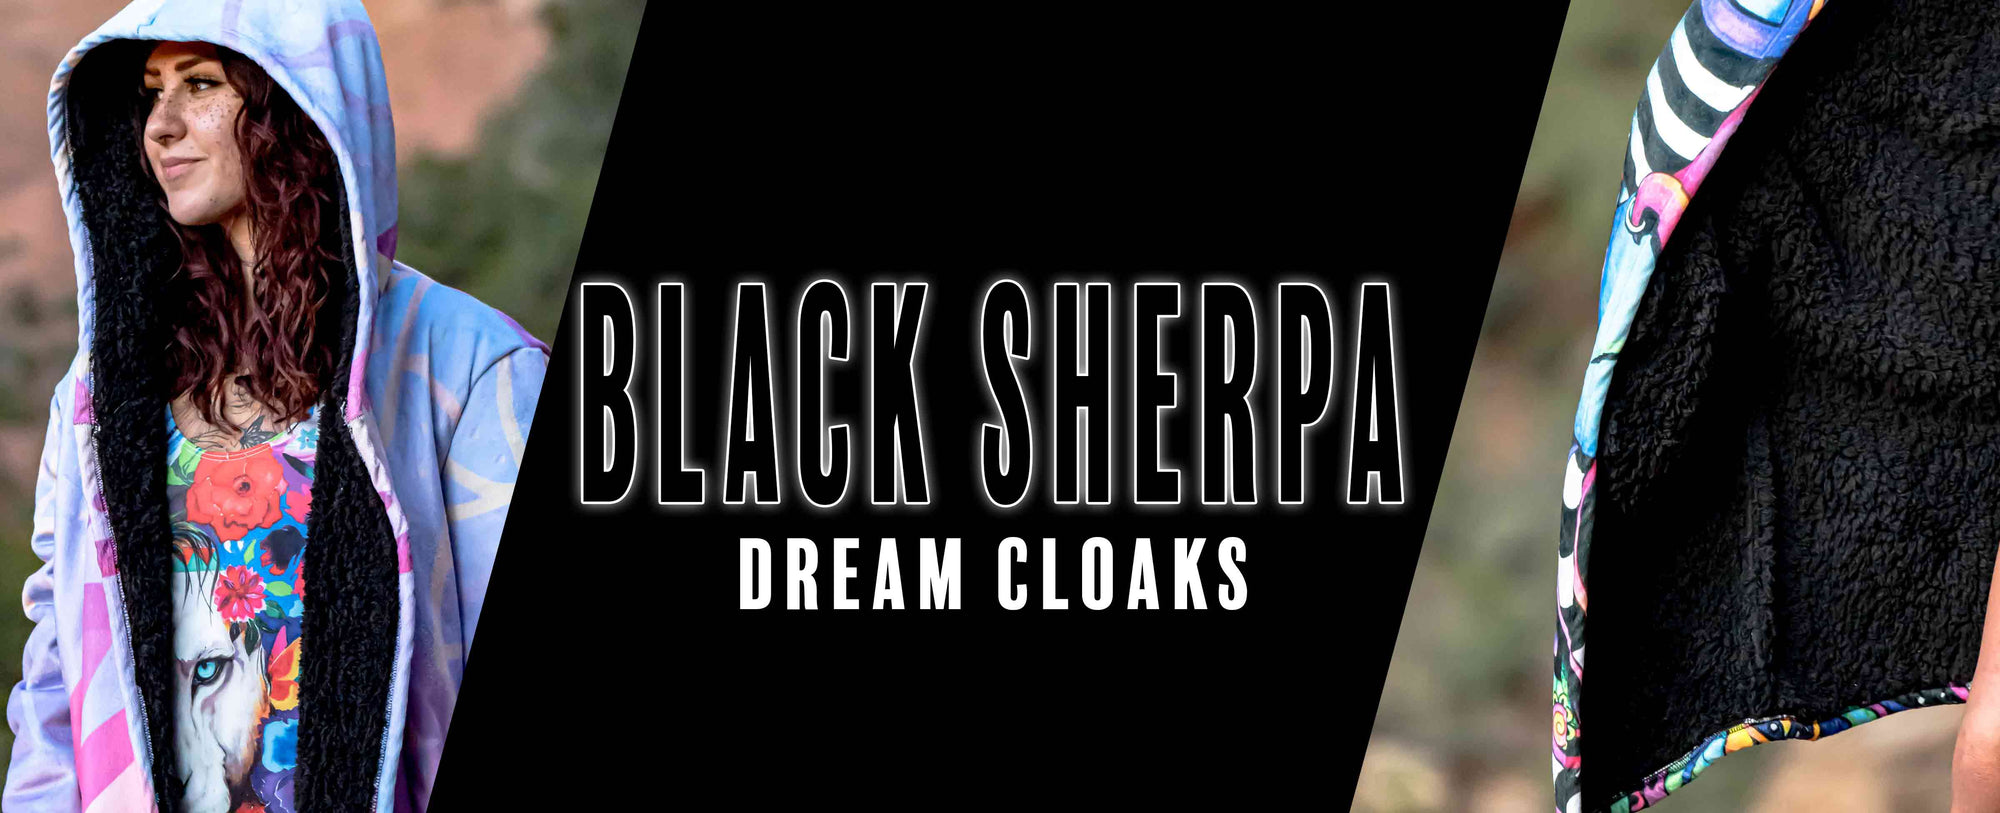 Black Sherpa Dream Cloaks